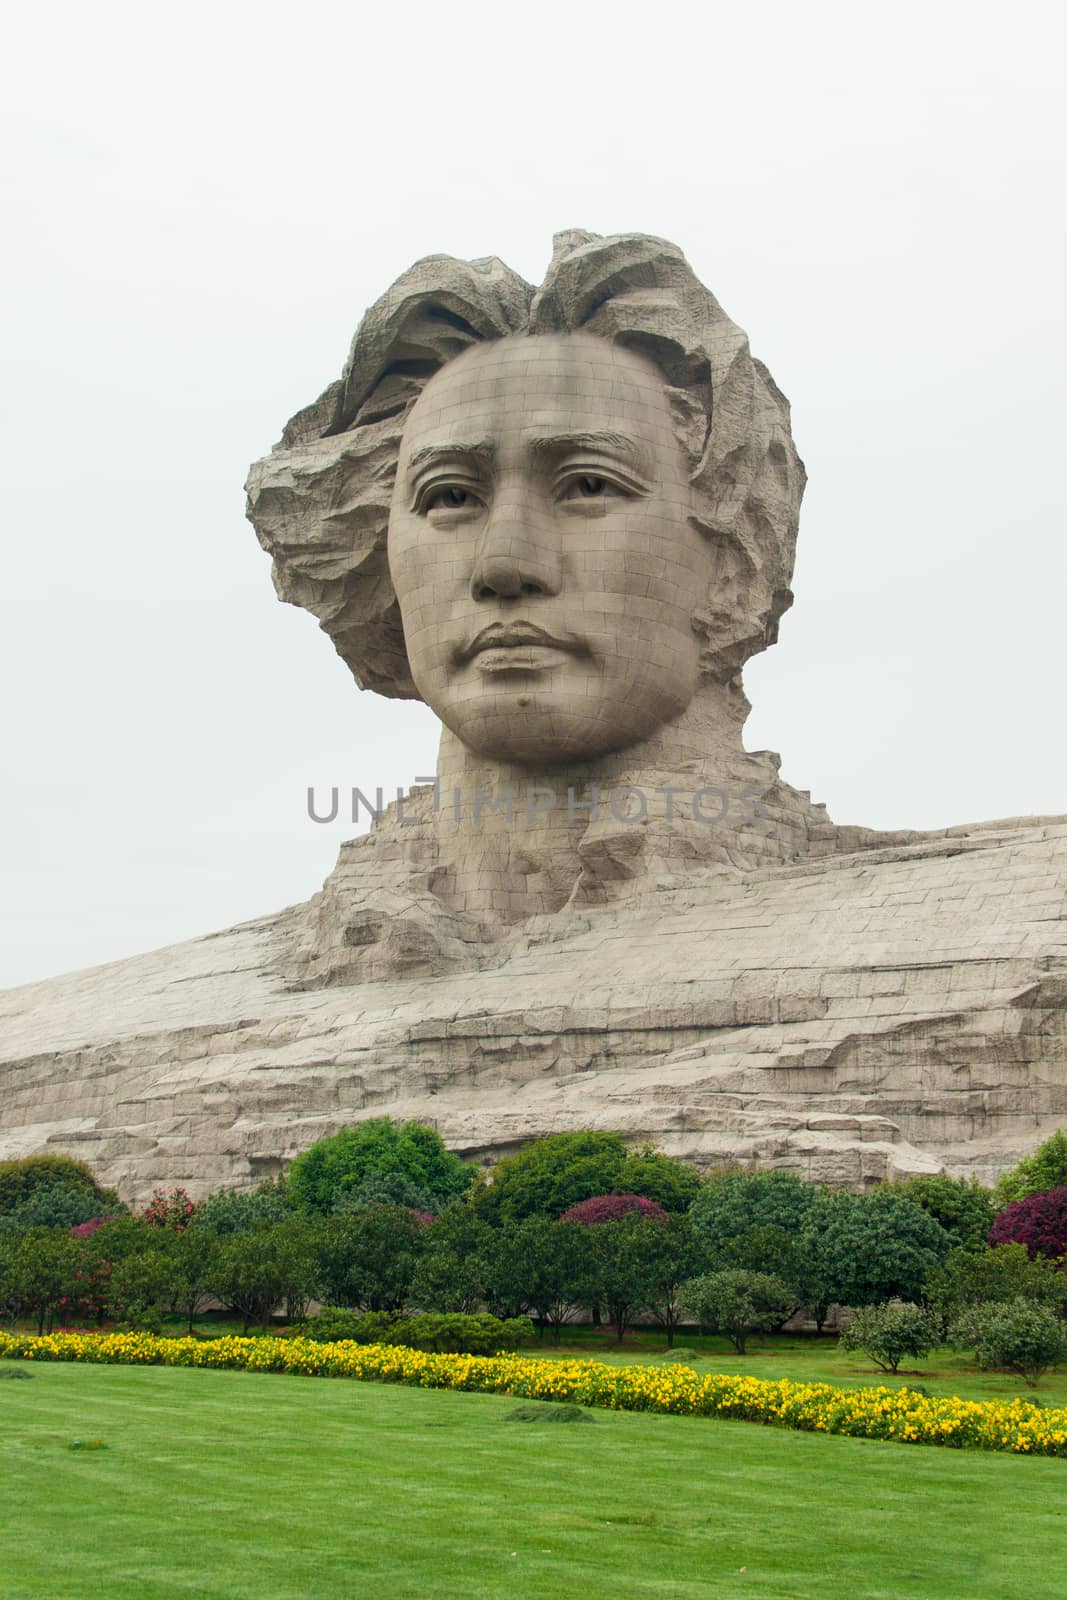 Changsha Orange Isle young Mao Zedong statue by aodian